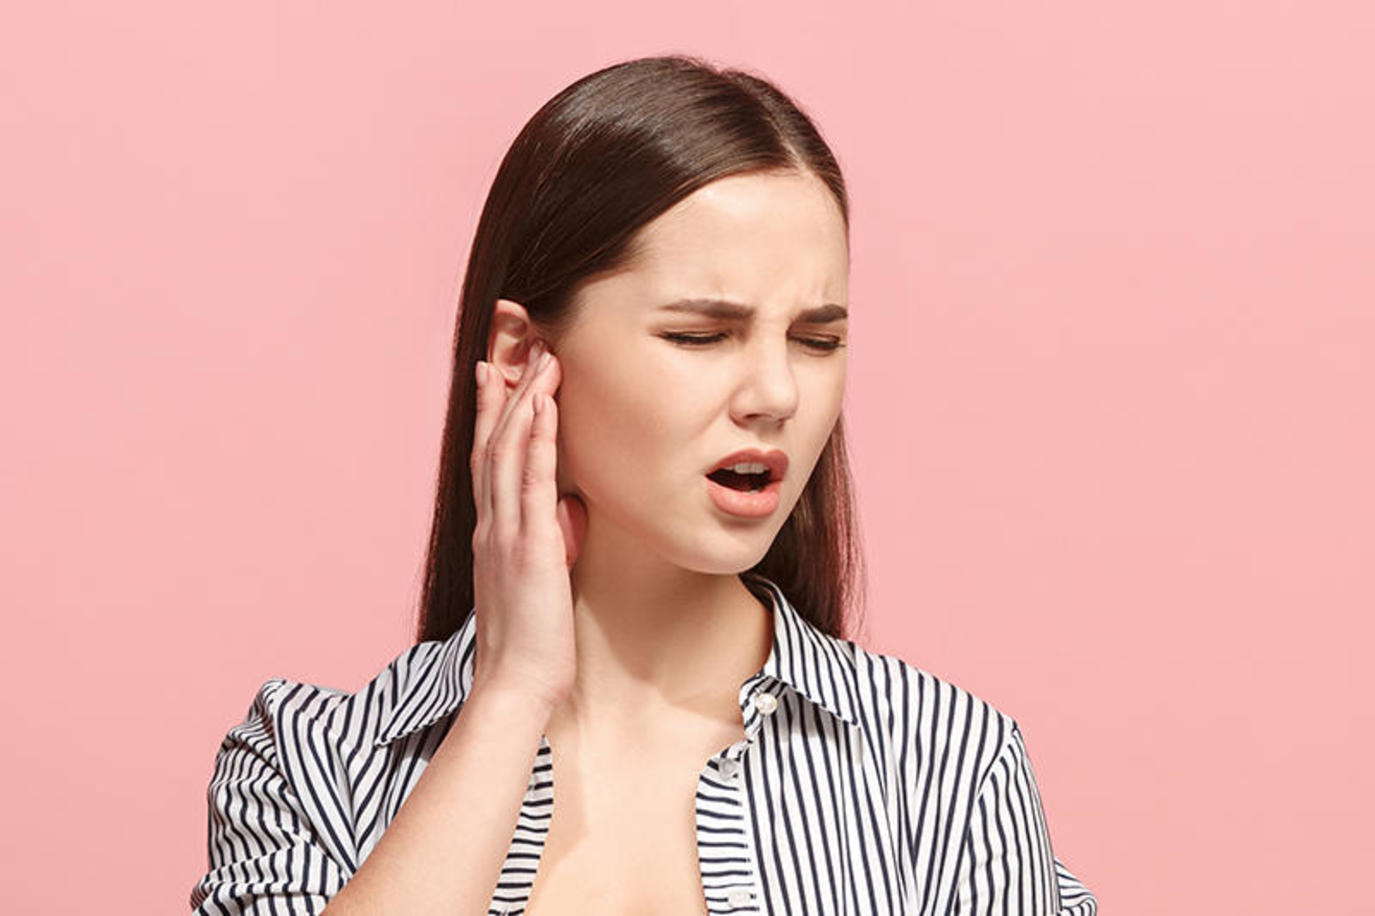 شمع الأذن قد يؤثر على السمع فكيف تتعاملين معه؟
